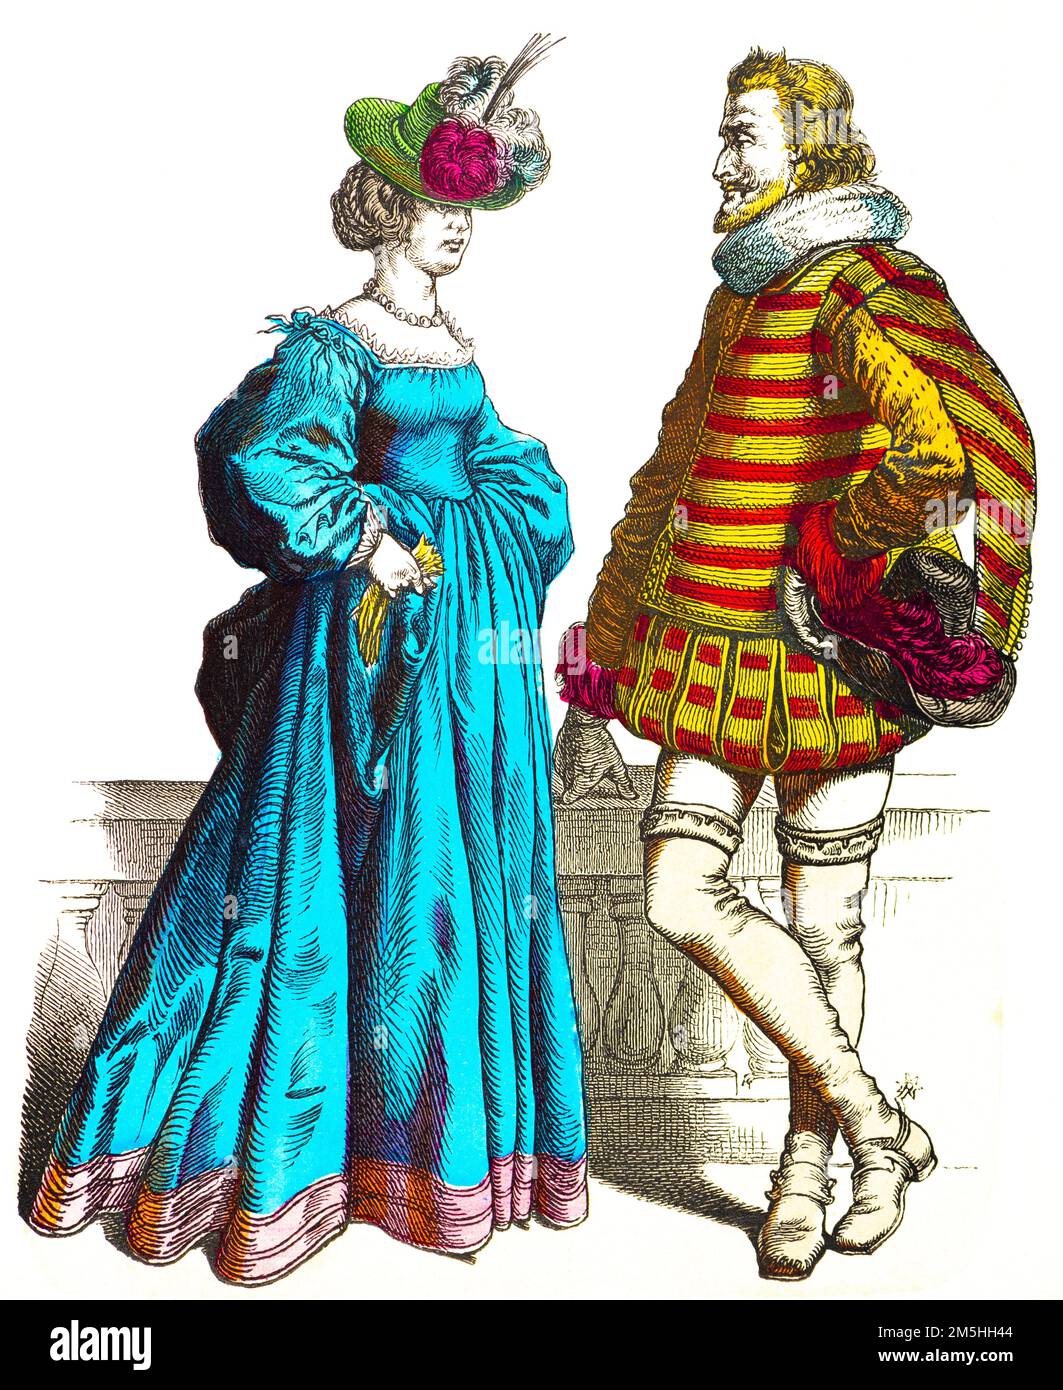 Costumes historiques au milieu du 17th siècle, illustration historique, Münchener Bilderbogen, München 1890 Banque D'Images